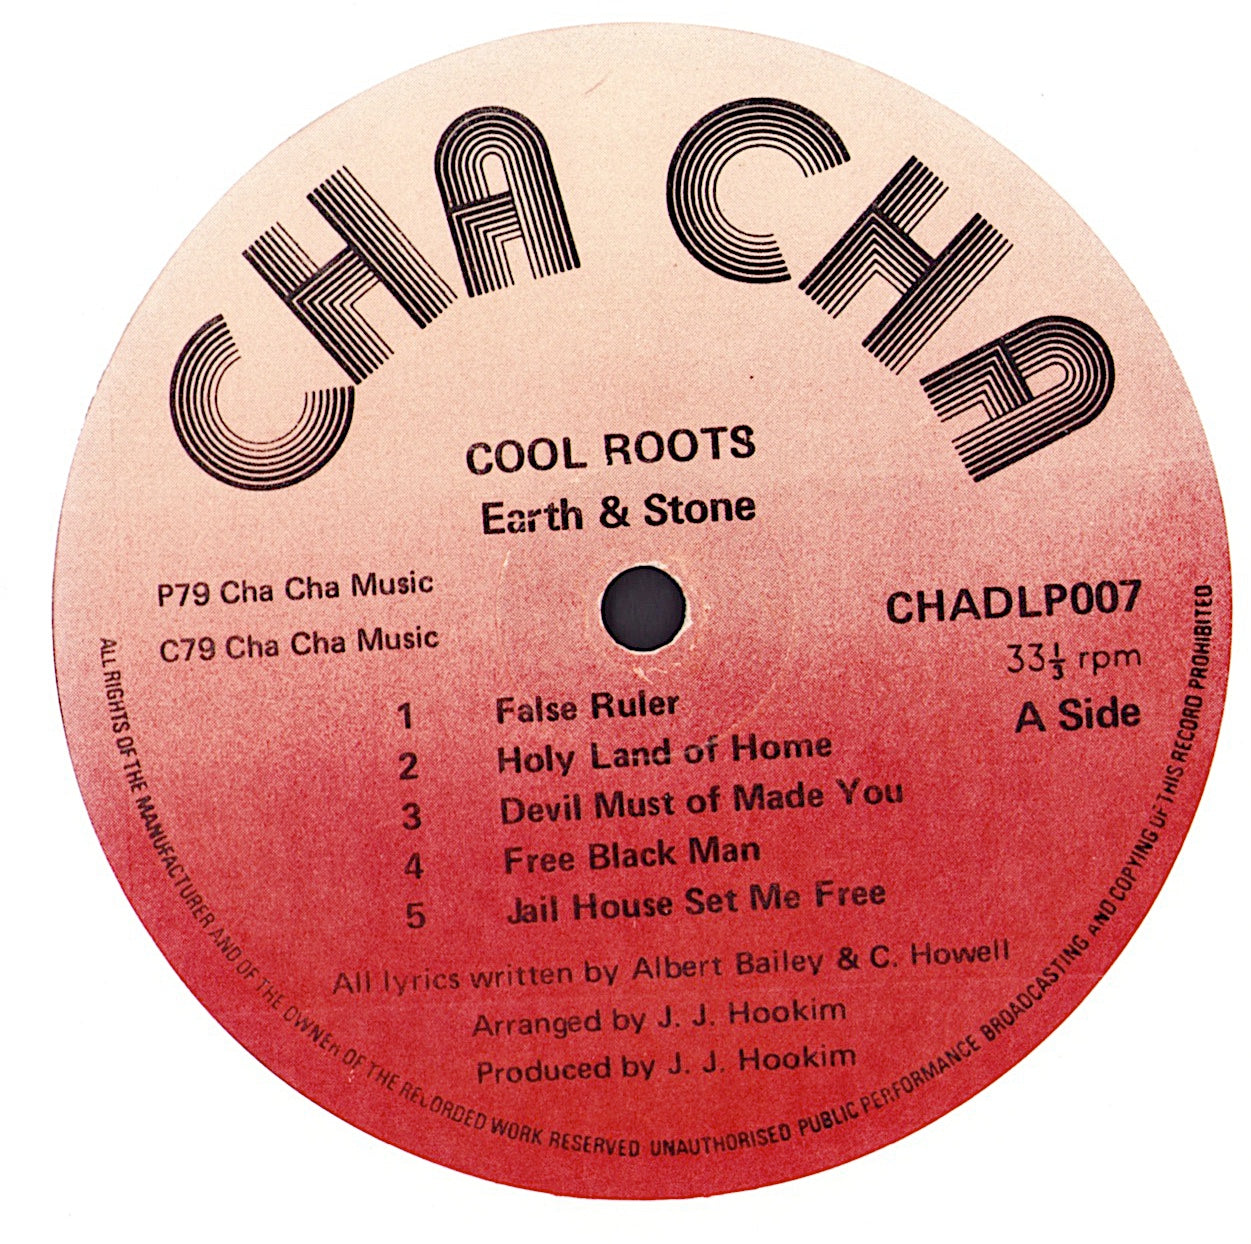 Earth & Stone - Kool Roots Vinyl 2LP